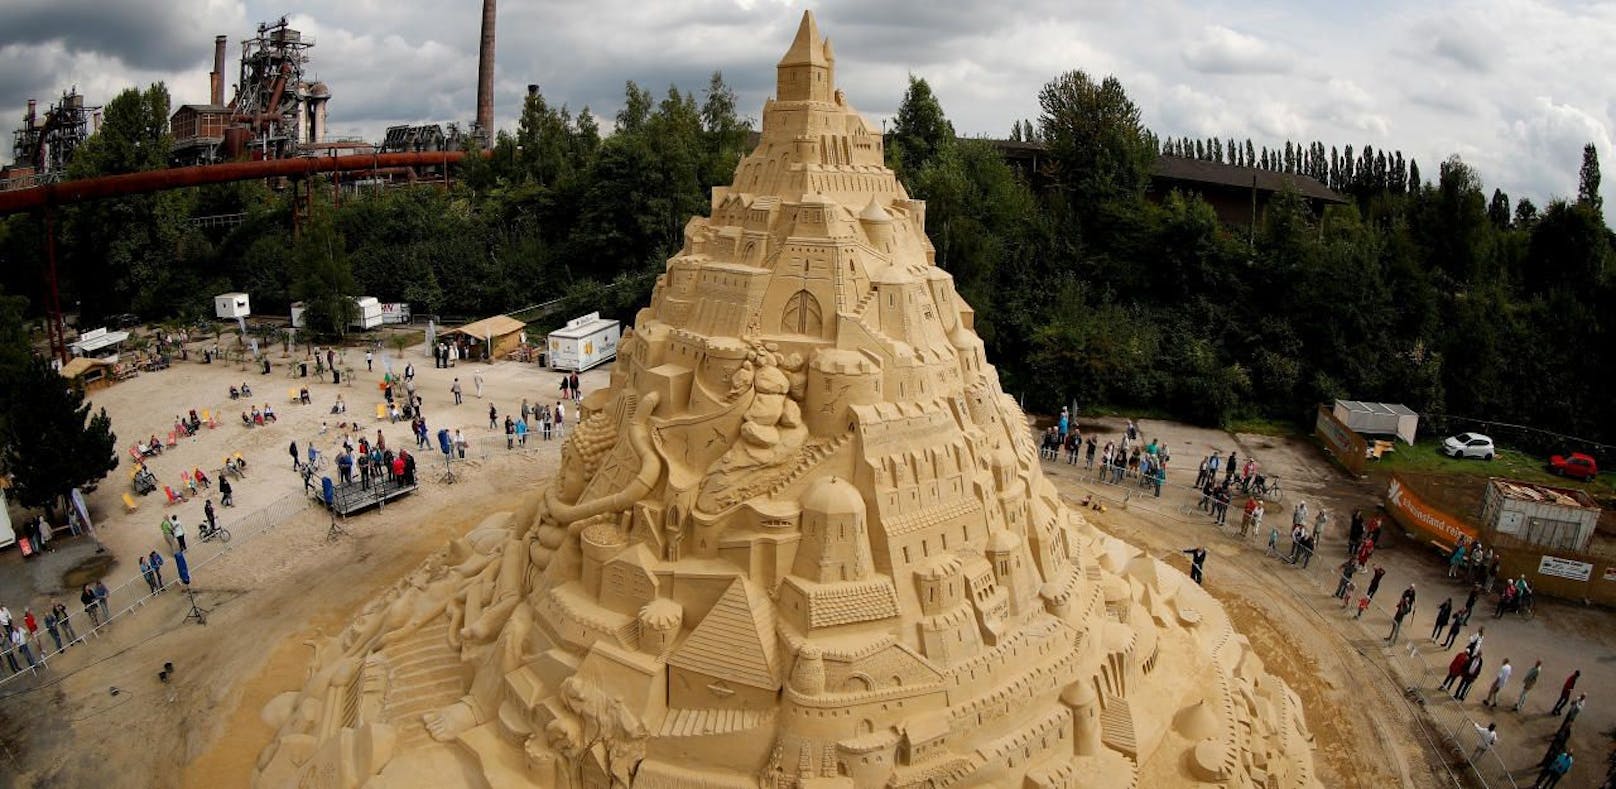 Weltrekord! Das ist die größte Sandburg der Welt